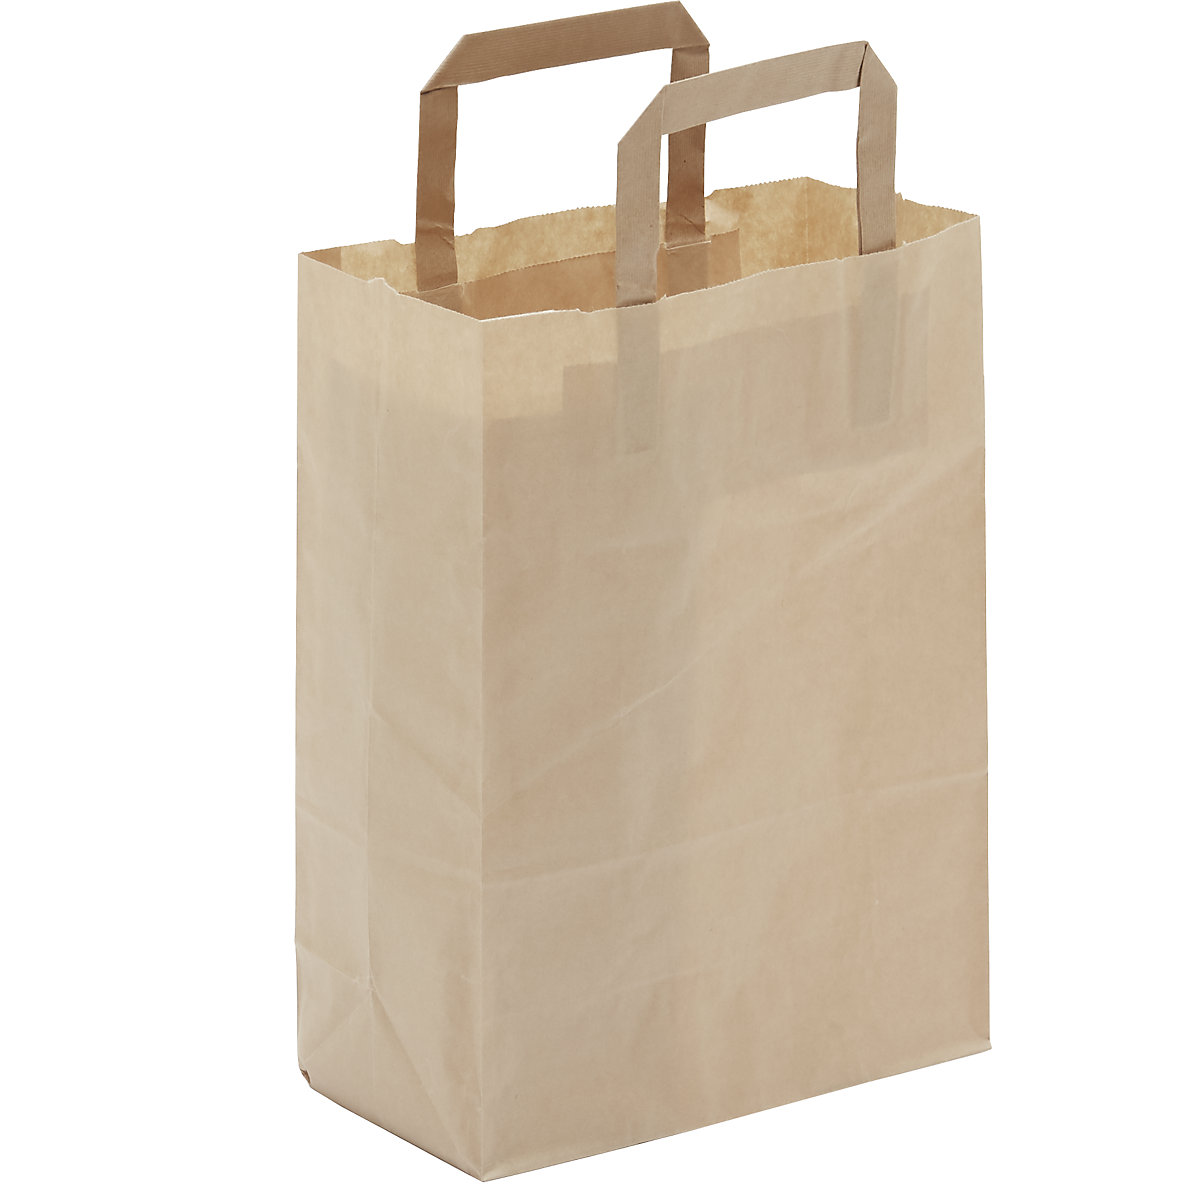 Amazon.com: Reli. Paper Shopping Bags | 60 Pcs | Large 16